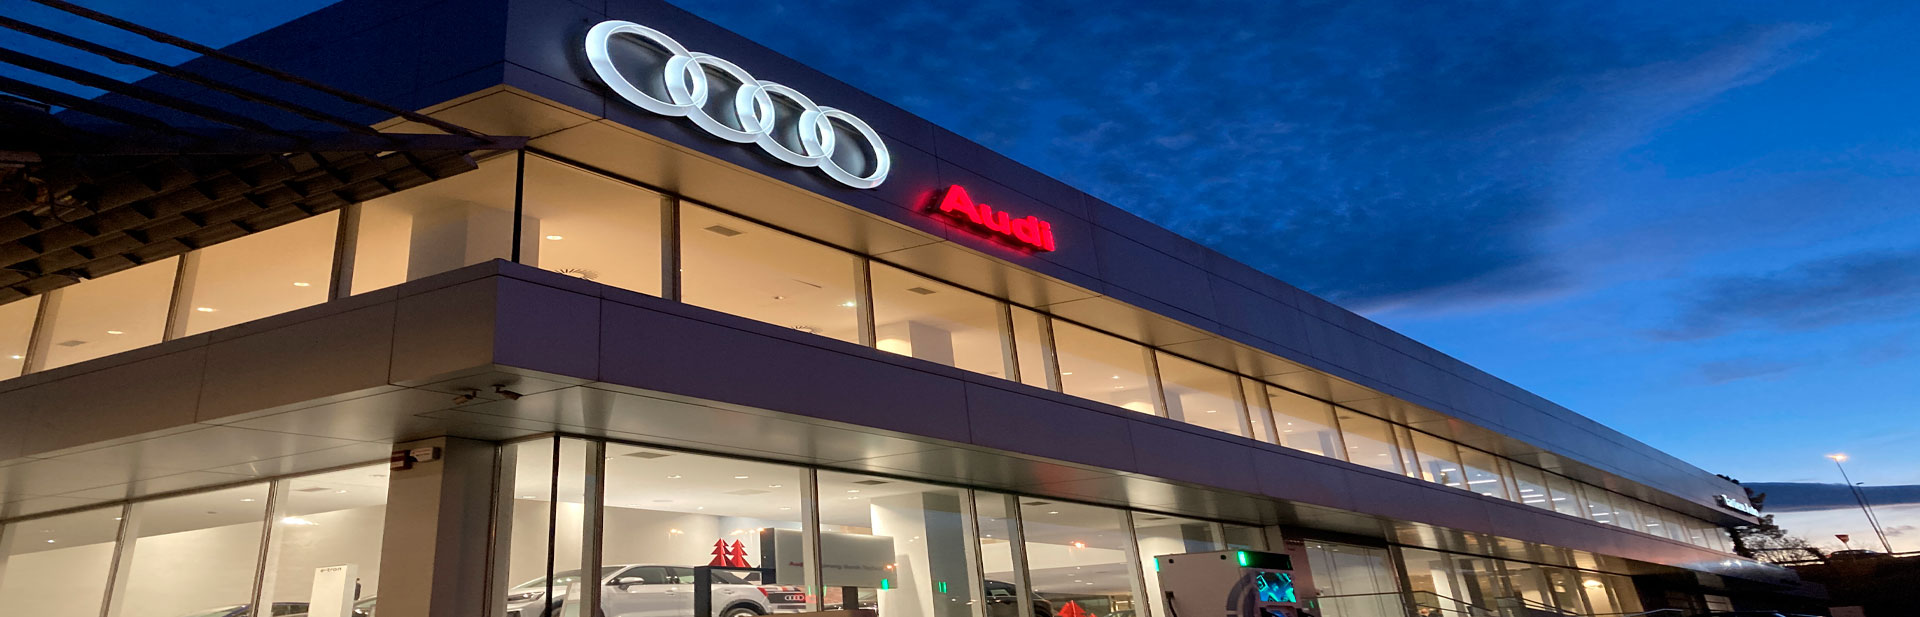 Nuestro concesionario en Lugones de vehículos Audi y Volkswagen de ocasion, seminuevos y KM0